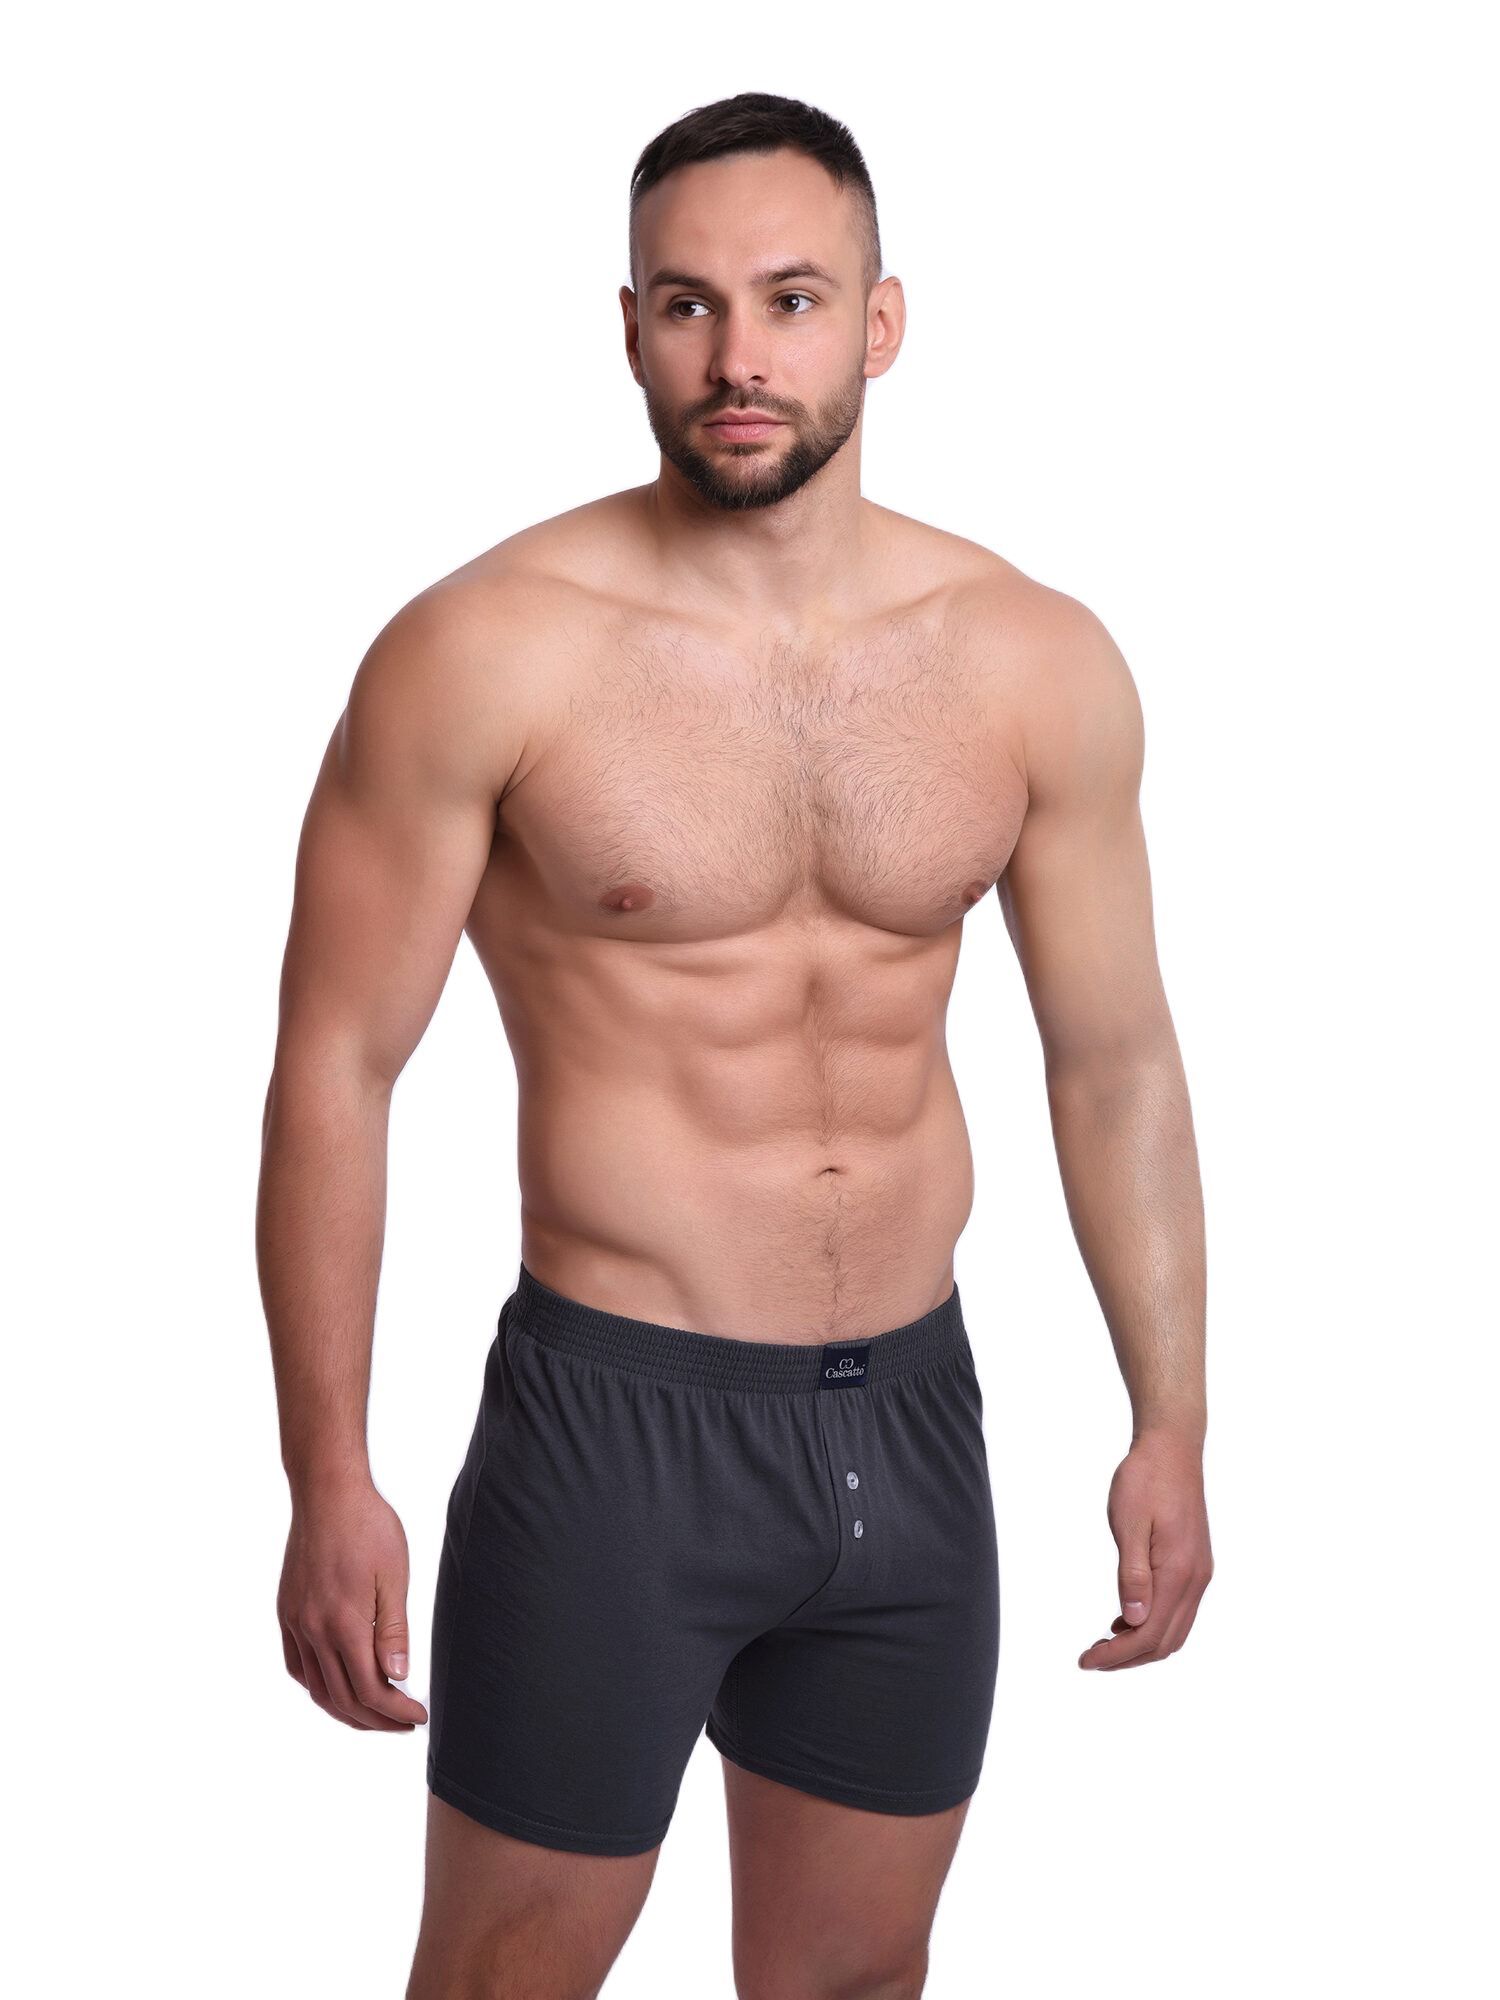 Трусы Cascatto шорты для мужчин, тёмно-серый, размер L, MSH1803